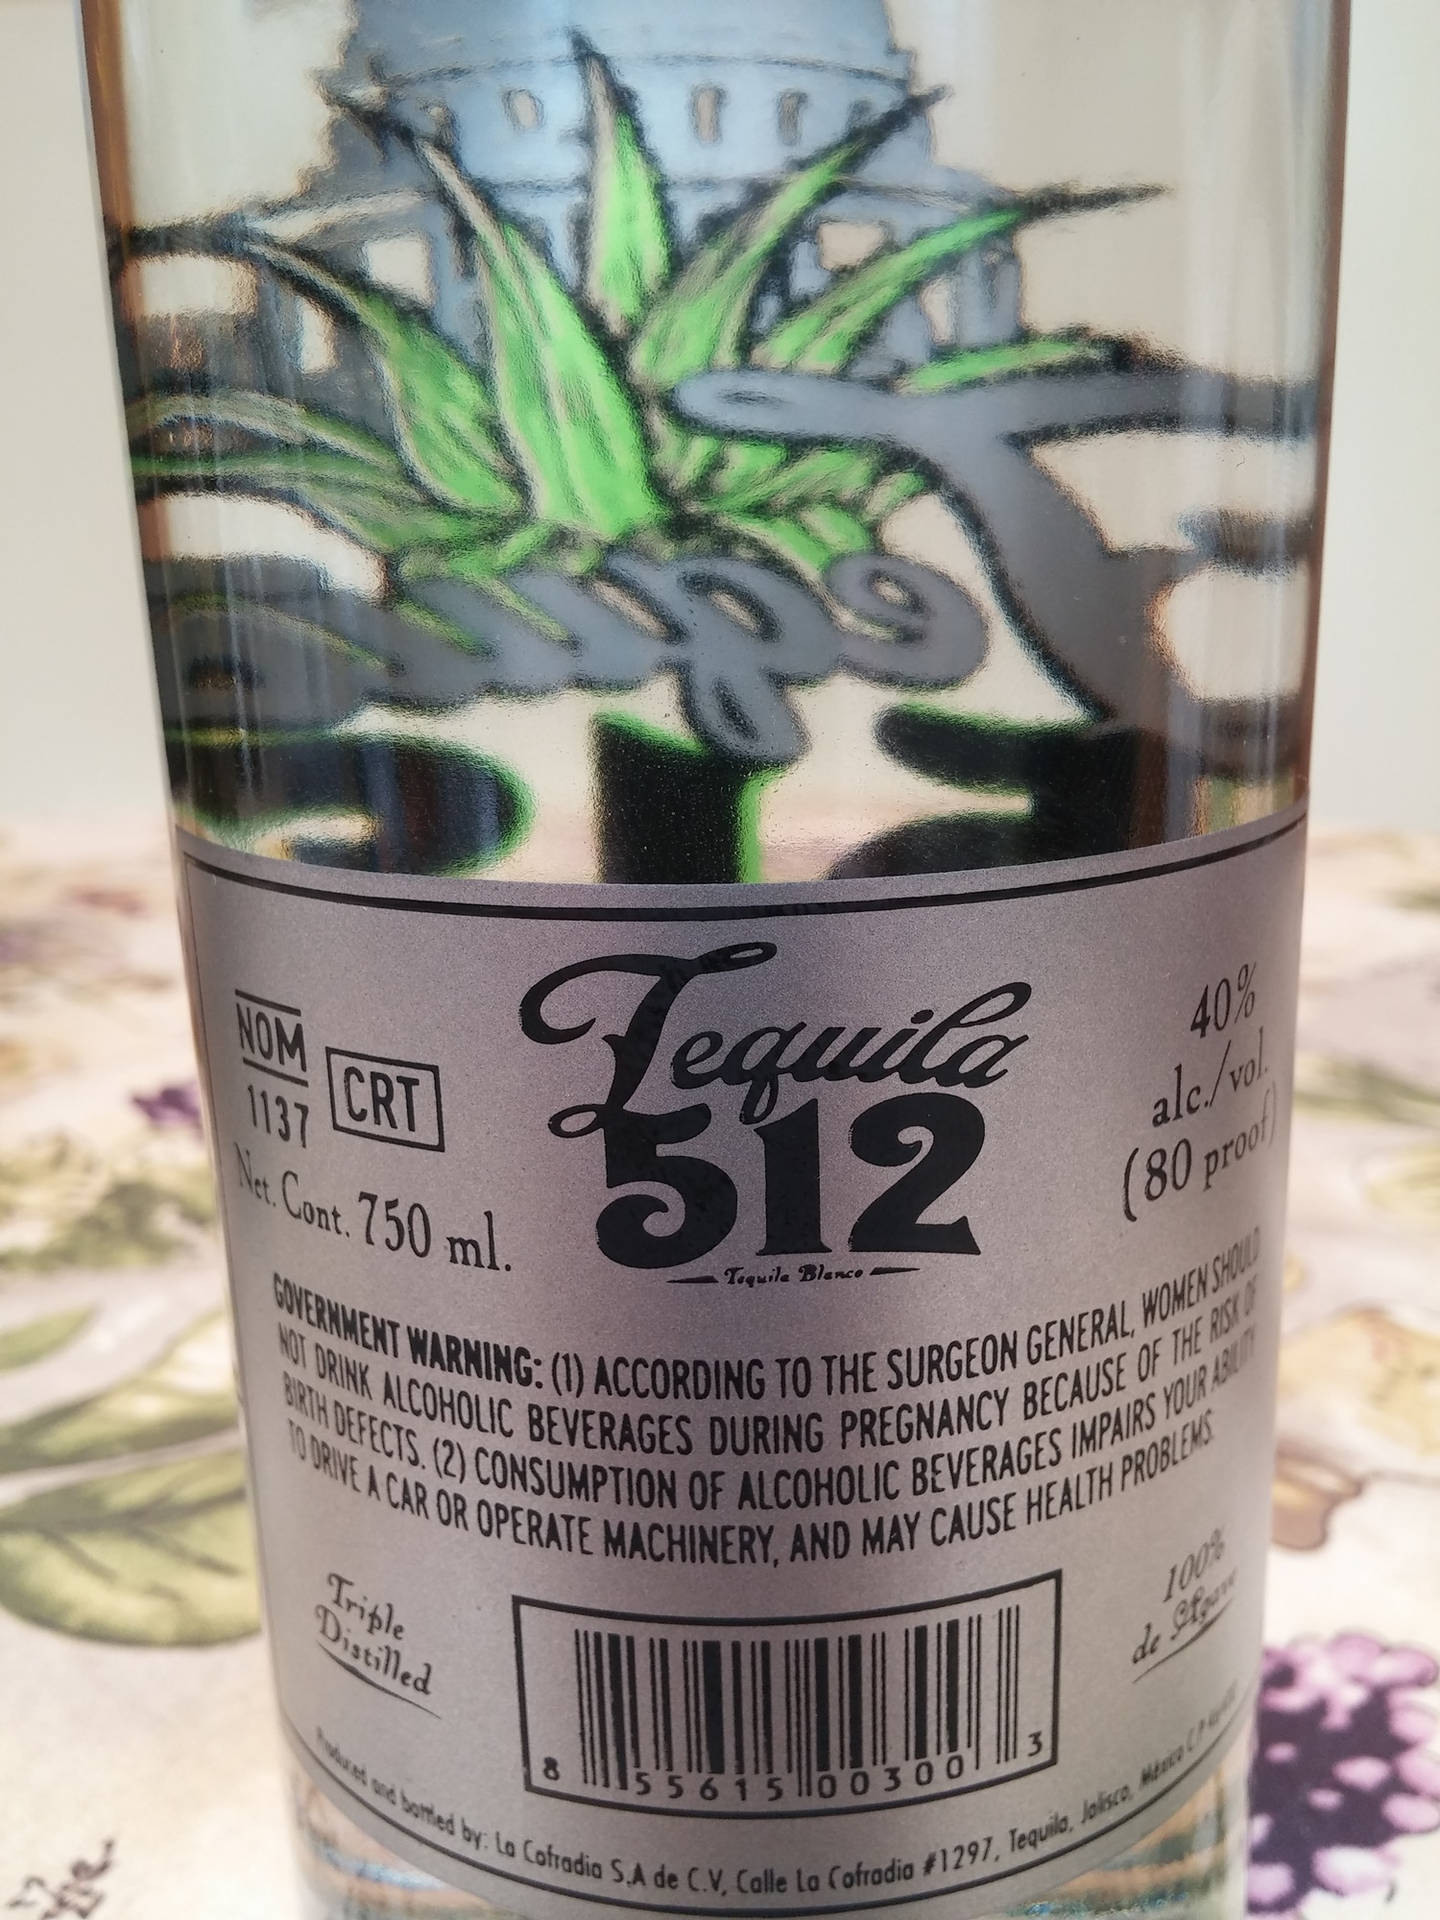 Tequila 512 Bagetiket: Tag en tur tilbage i tid med dette mønster, der minder om de tidløse, klassiske retromønstre. Wallpaper